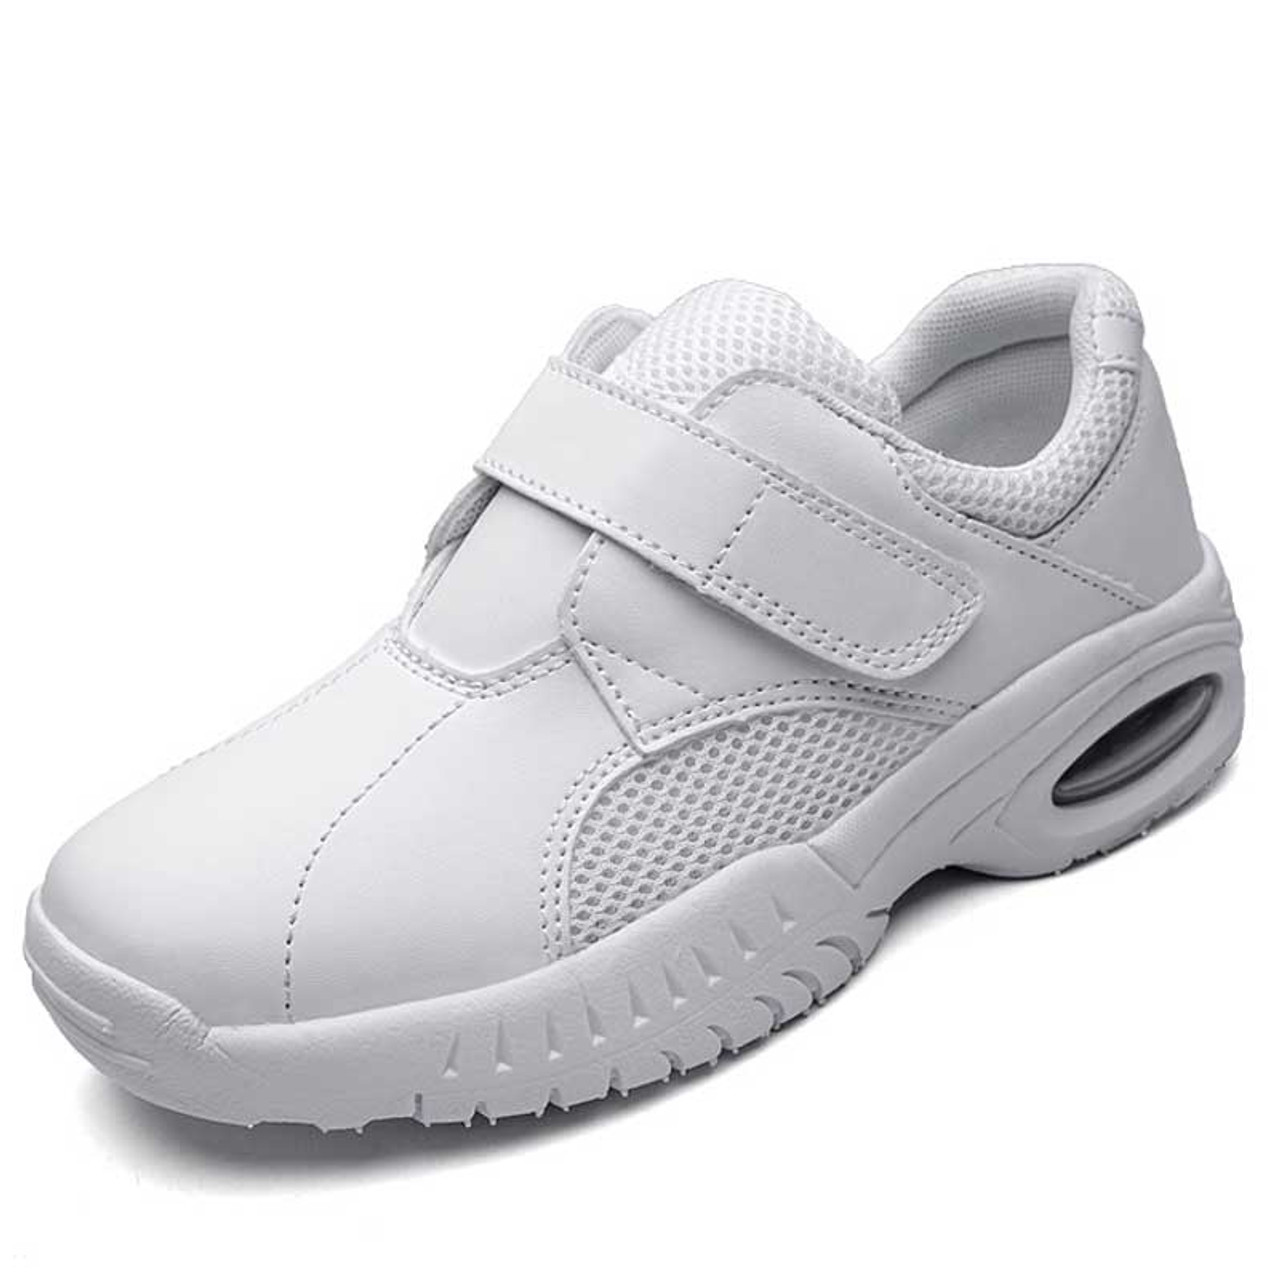 White plain velcro slip on shoe sneaker